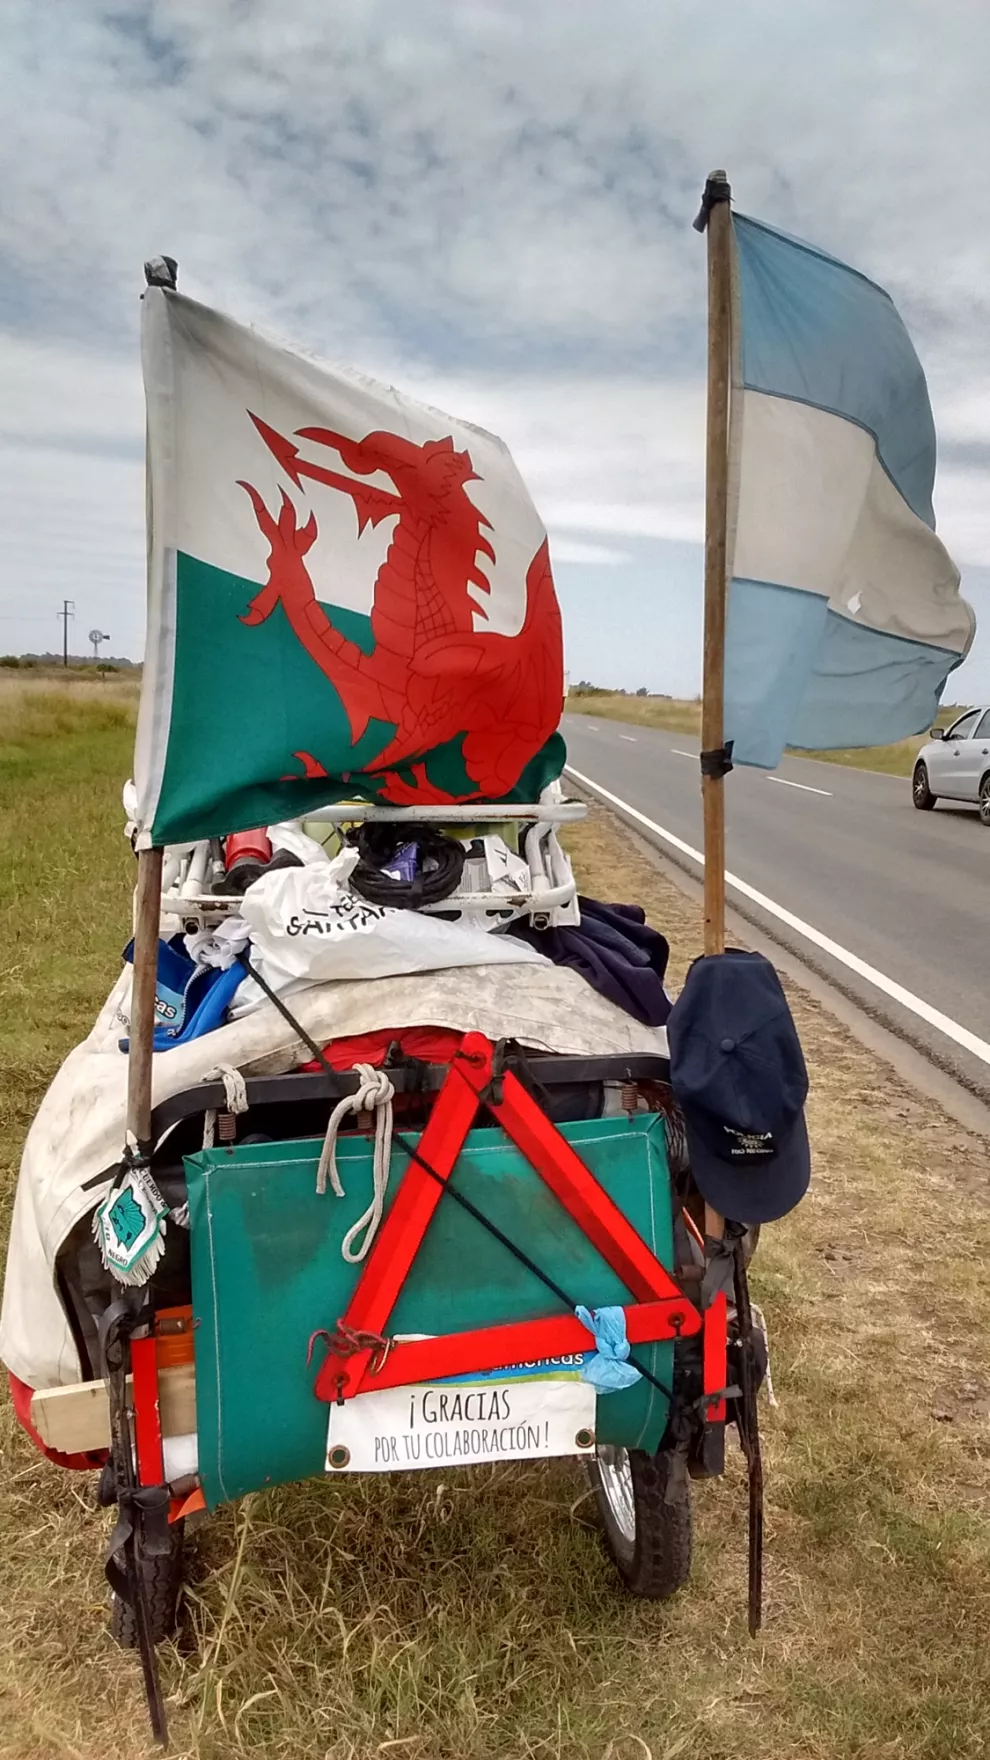 El "carricatre pilchero", como lo llama Echegaray Davies, pesa 180 kilos,.tiene cuatro ruedas de moto y las banderas de Argentina y Gales